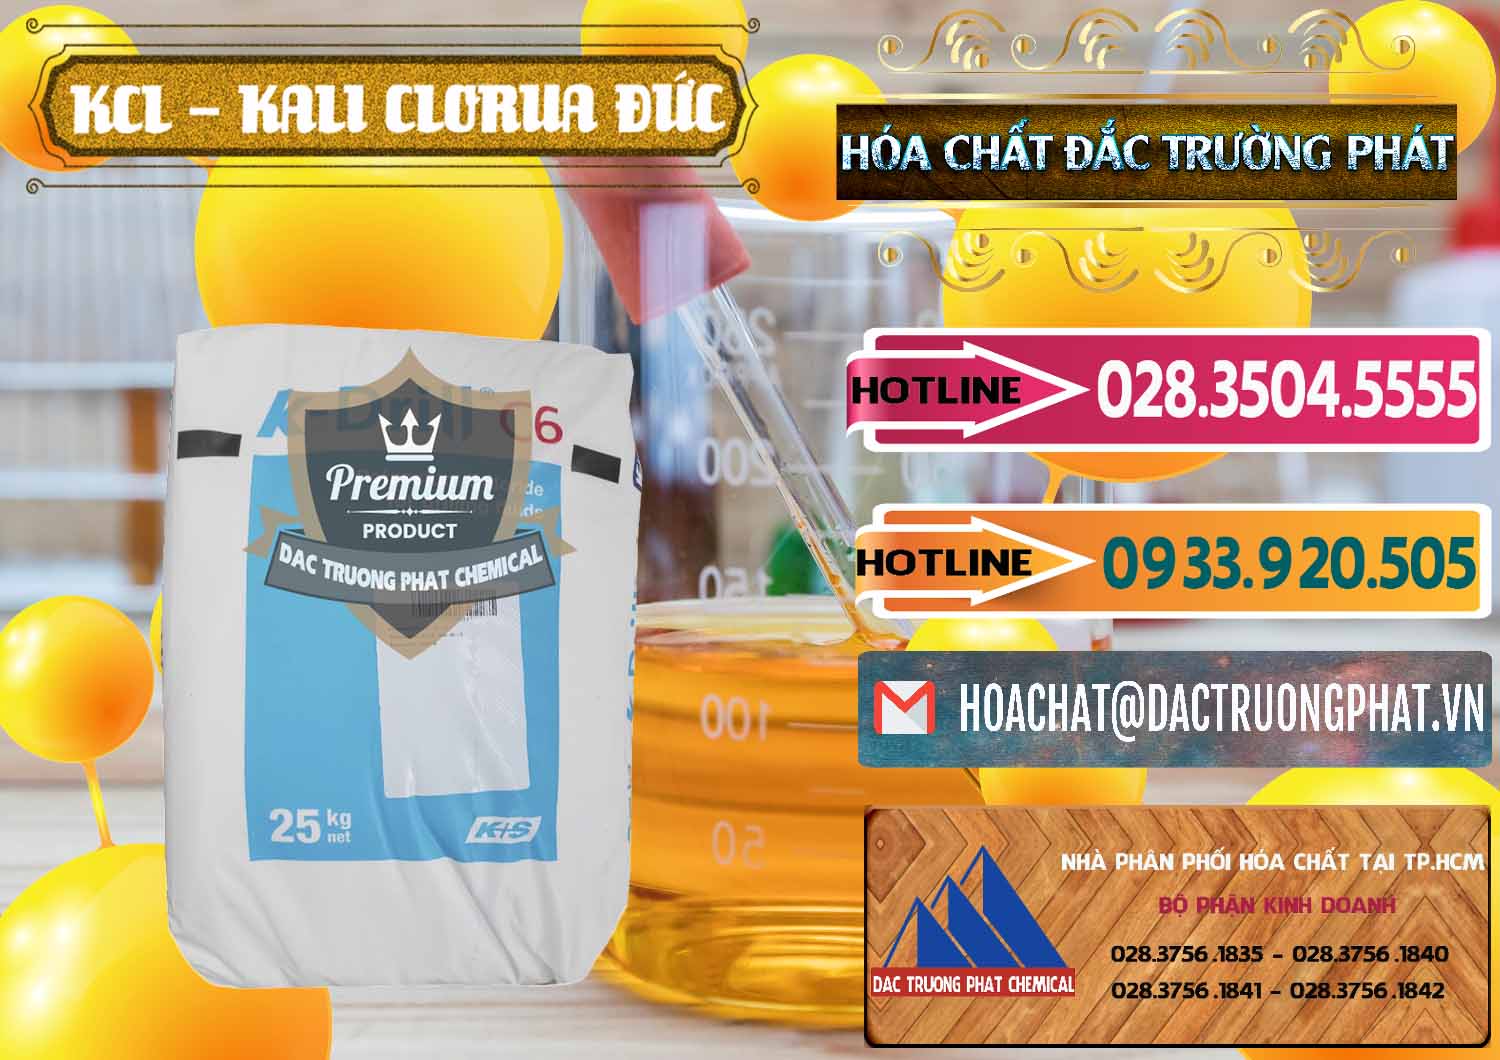 Đơn vị chuyên nhập khẩu - bán KCL – Kali Clorua Trắng K DRILL Đức Germany - 0428 - Cty chuyên cung cấp và nhập khẩu hóa chất tại TP.HCM - dactruongphat.vn